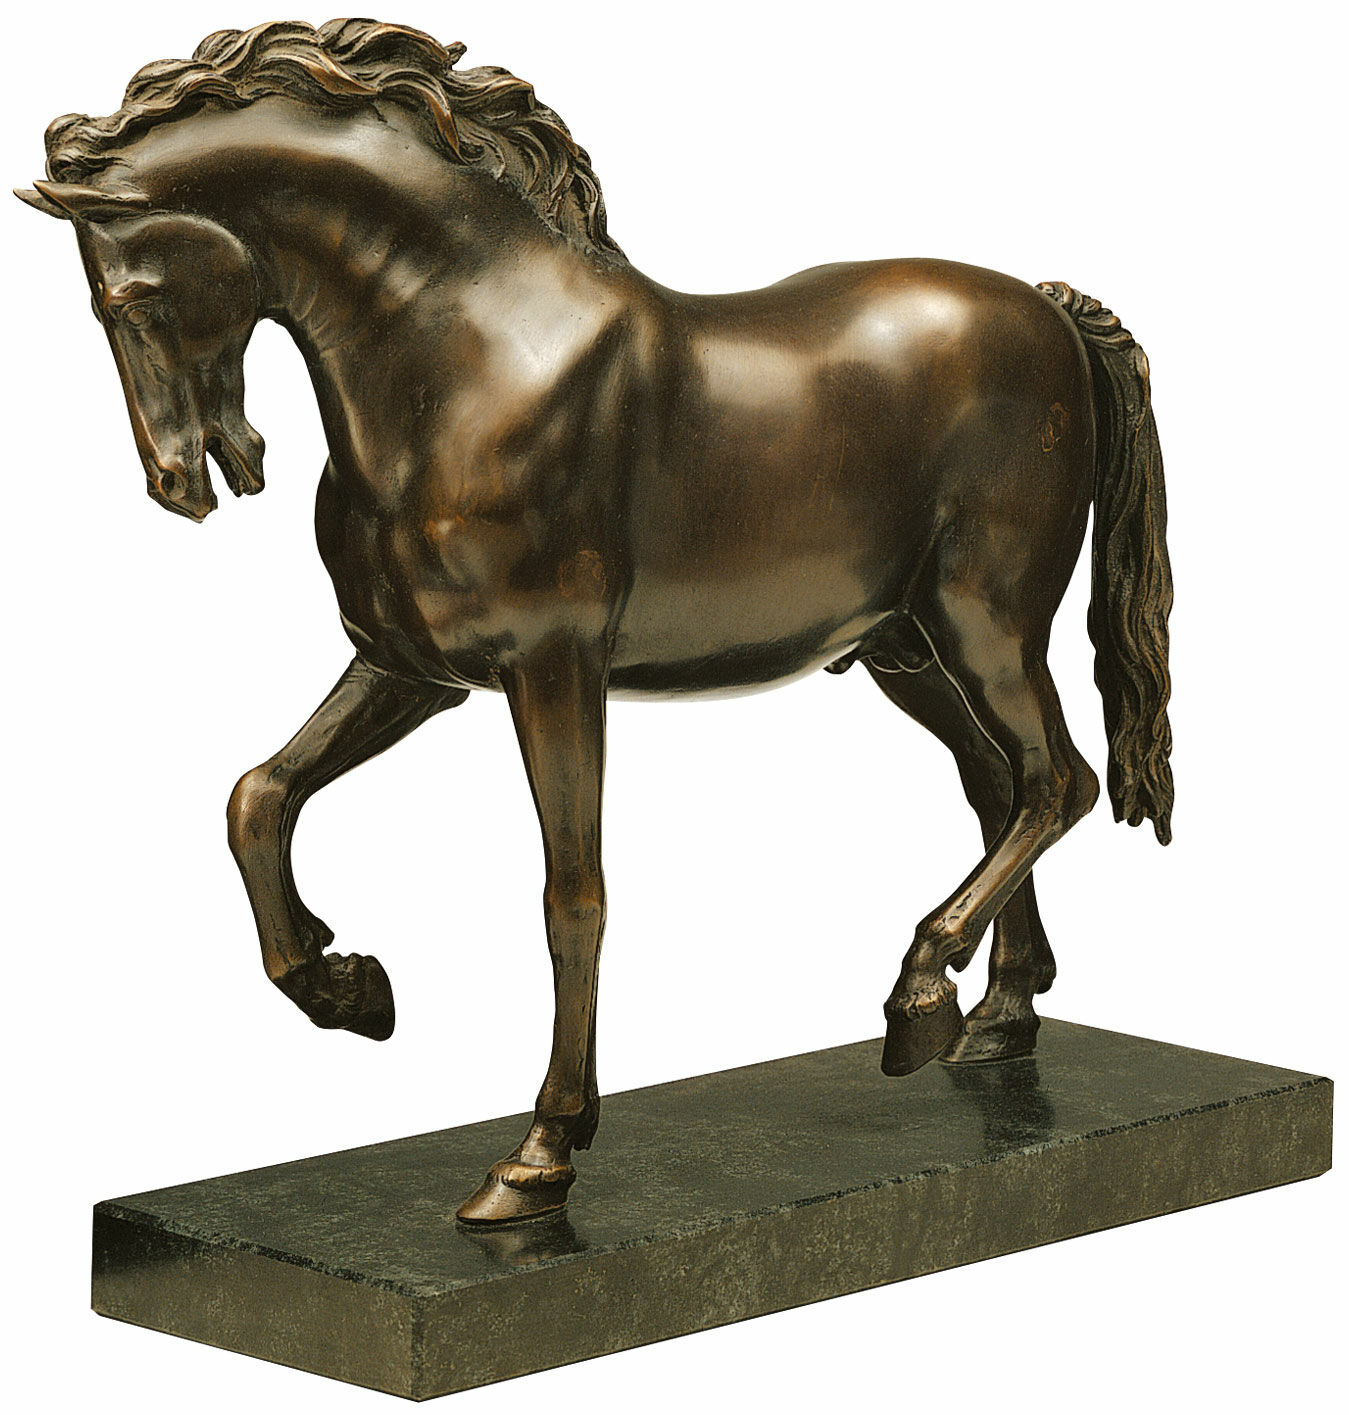 Sculpture "The Horse of the Medici" (1594), bonded bronze version by Giovanni da Bologna